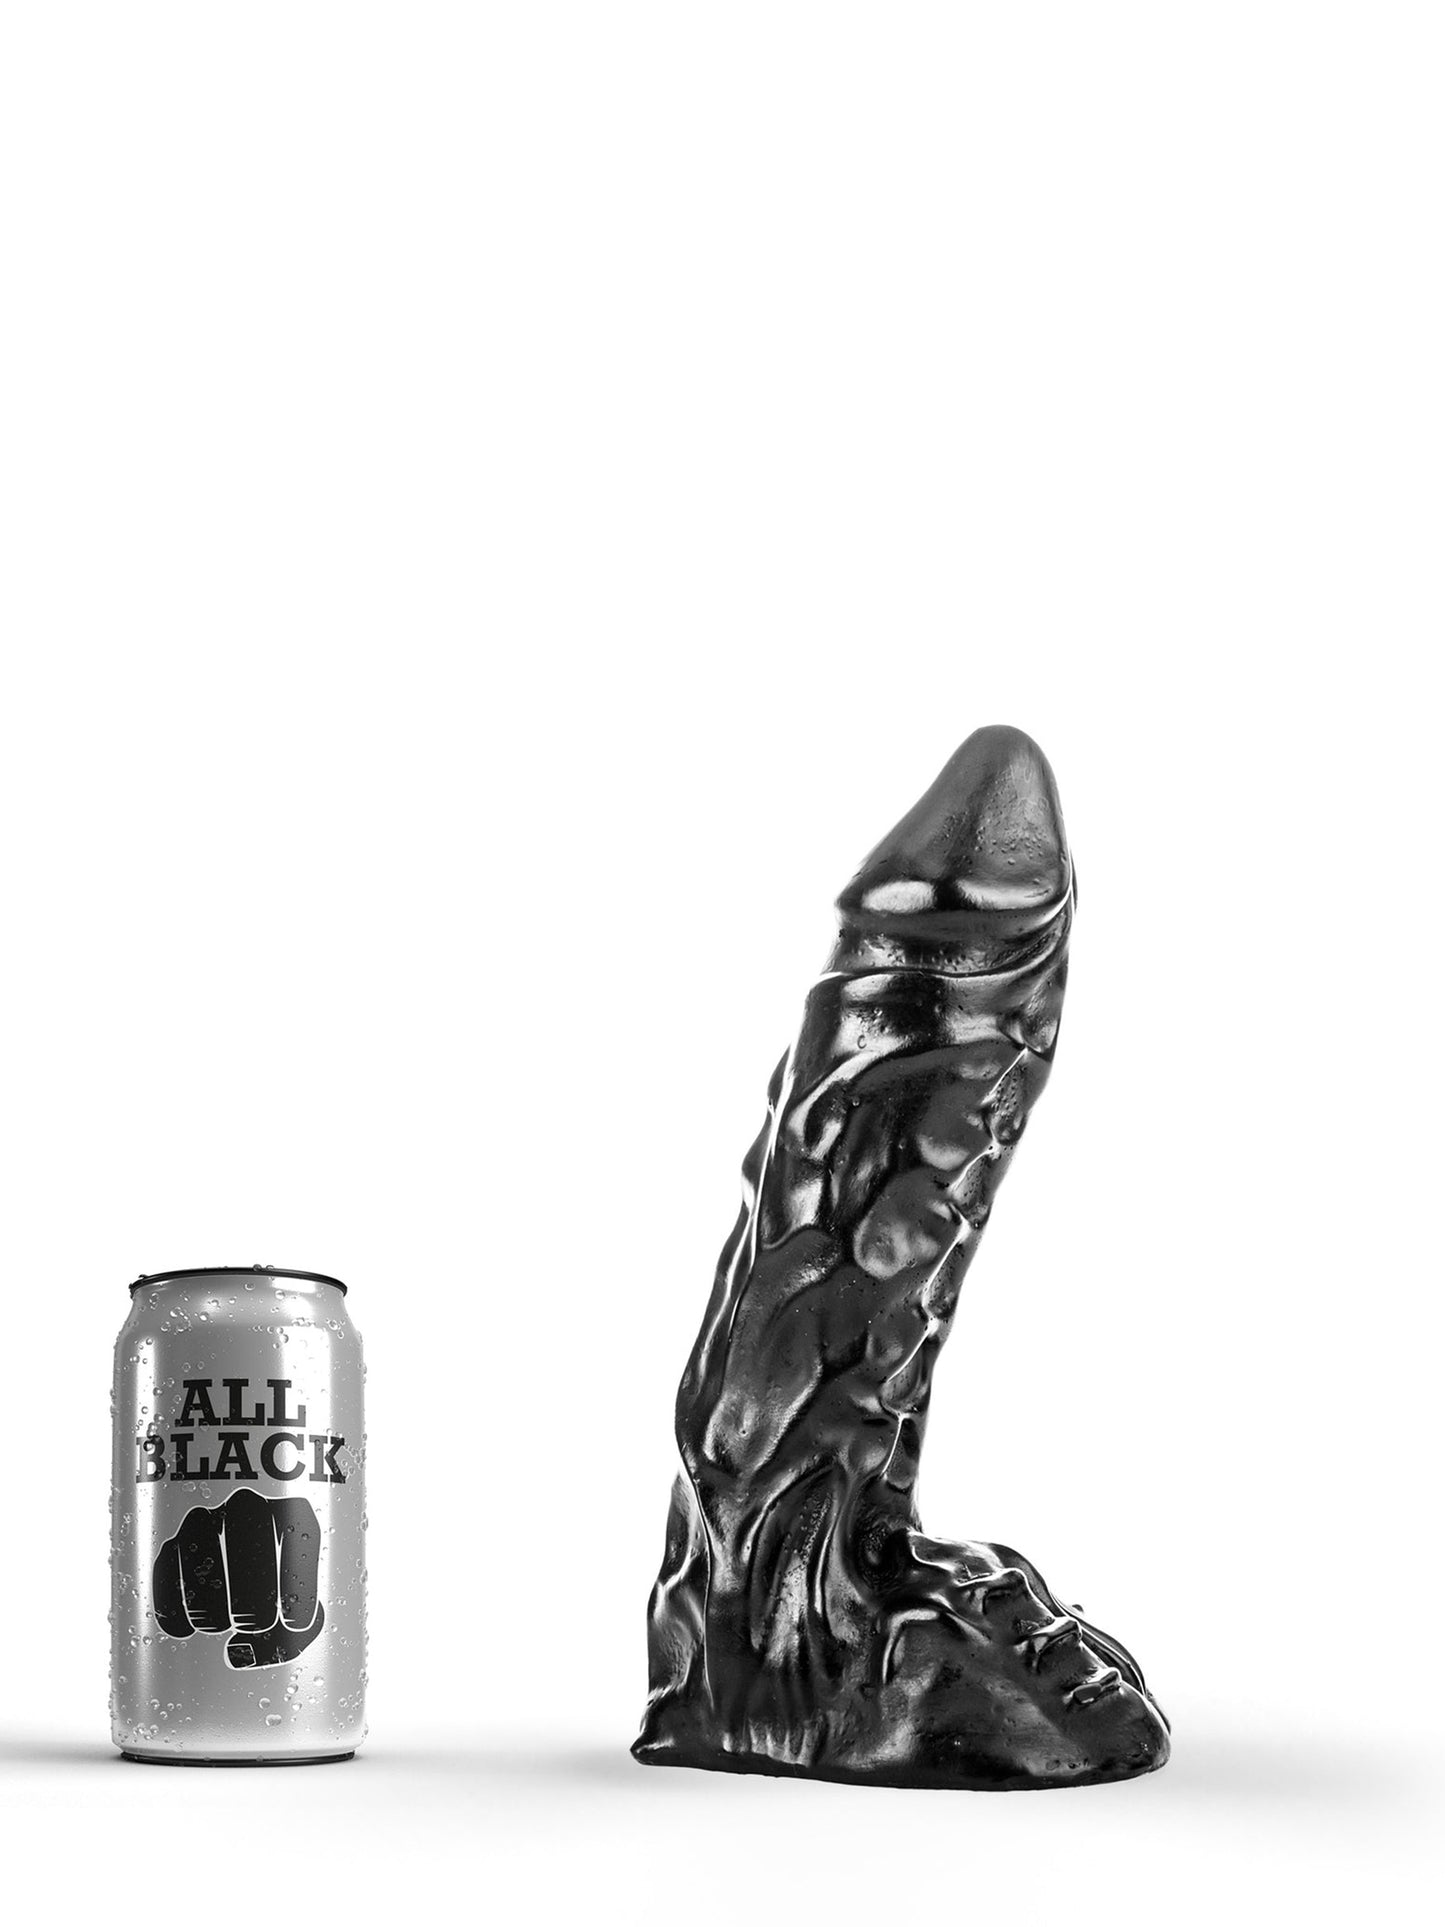 All Black - Dildo Pene Realistico Acanalado Dickie 23 cm